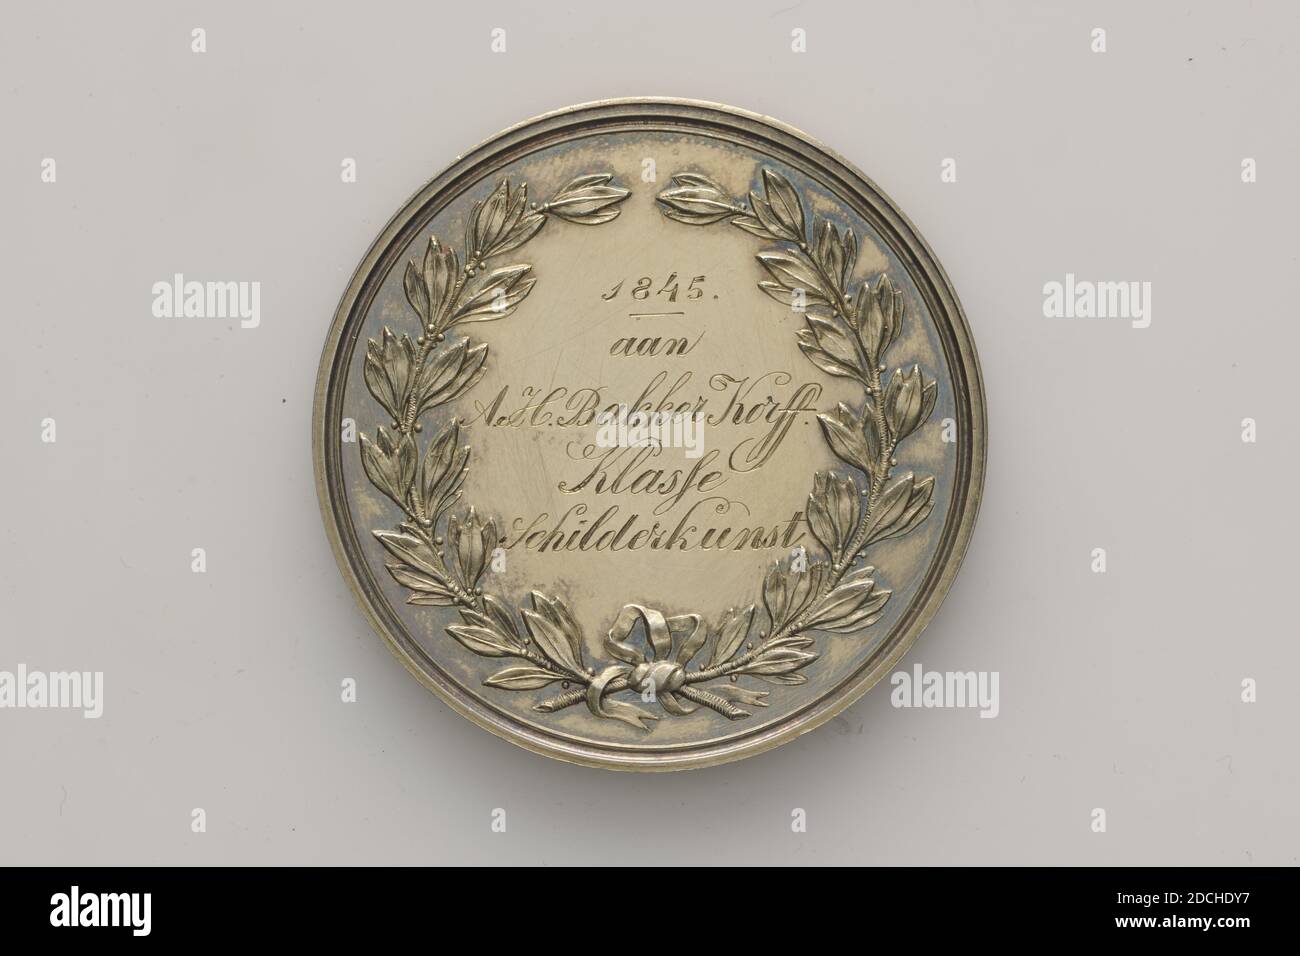 Medaglia di premio, Anonimo, 1845, Generale: 4.2 x 0.3cm (42 x 3mm), peso: 29,7g, medaglia di premio d'argento dell'accademia di disegno dell'Aia, onorata da A.H. Bakker Korff. Sul davanti un'iscrizione a due righe: S'GRAVENHAAGSCHE TEEKEN-AKADEMIE. Al contrario una corona di alloro, legata insieme con un nastro, incisa all'interno: 1845 ad A.H. Bakker Korff Classe di Pittura, 1940 Foto Stock